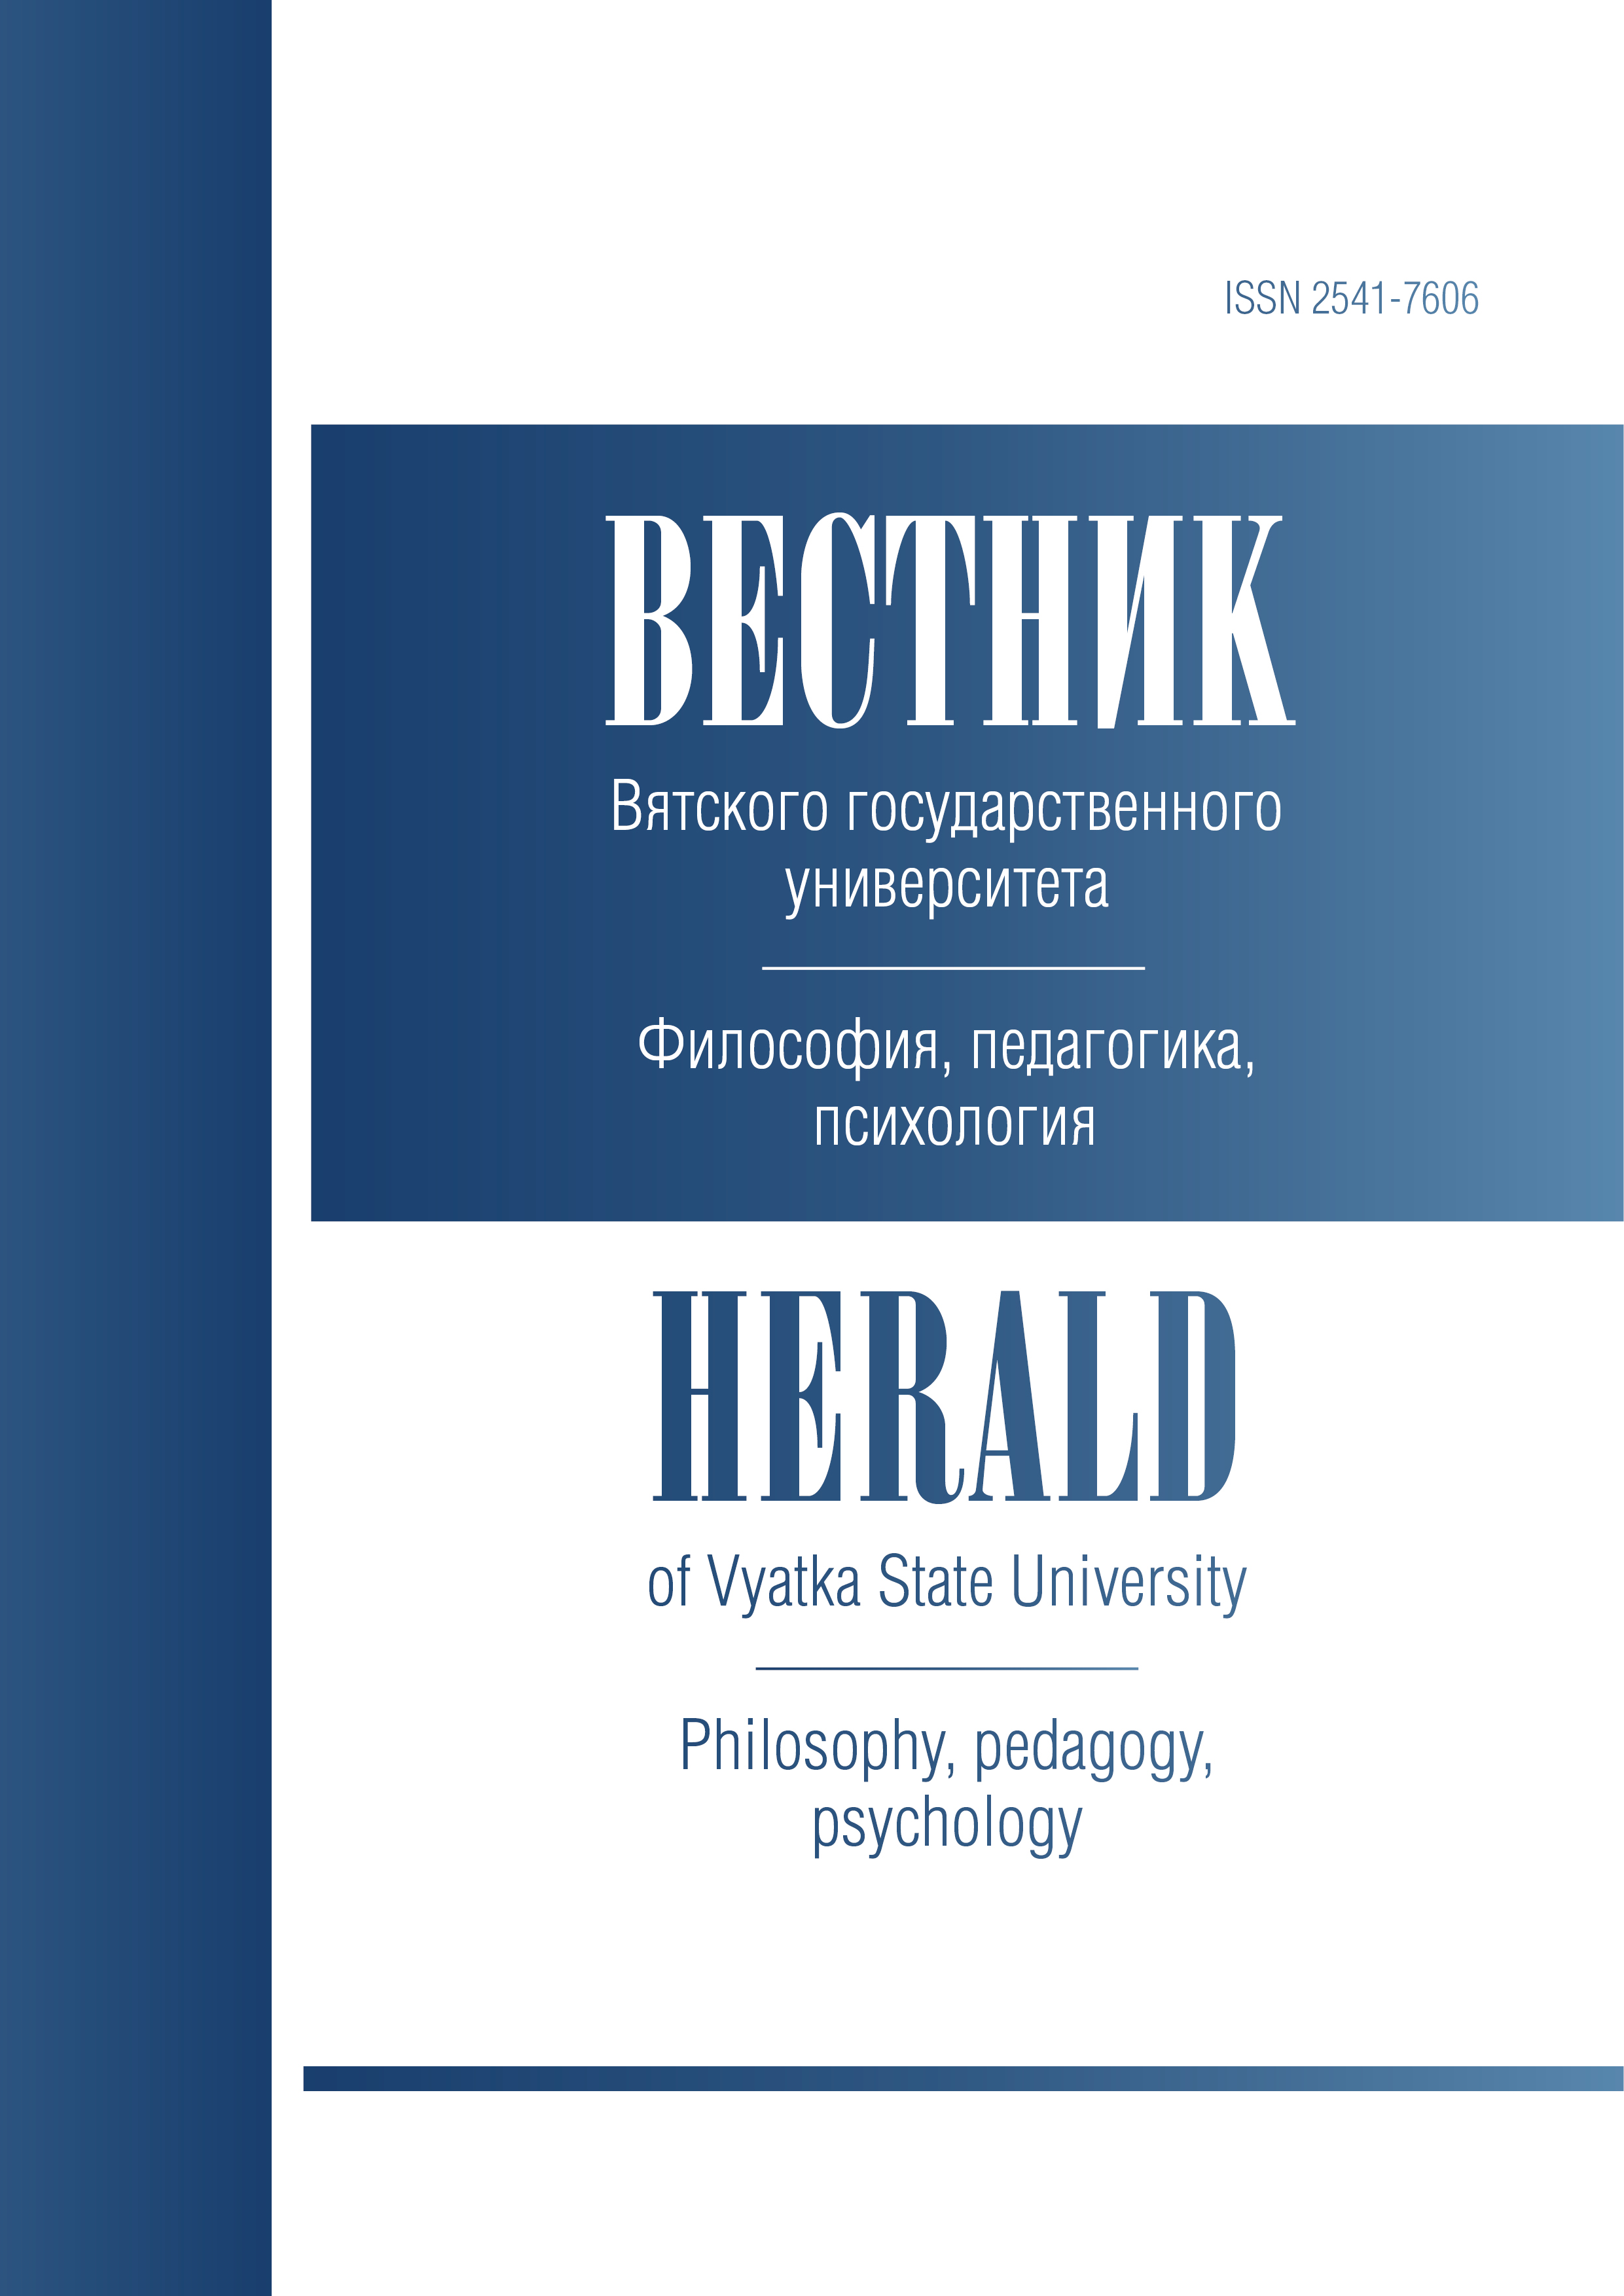 Herald of Vyatka State University